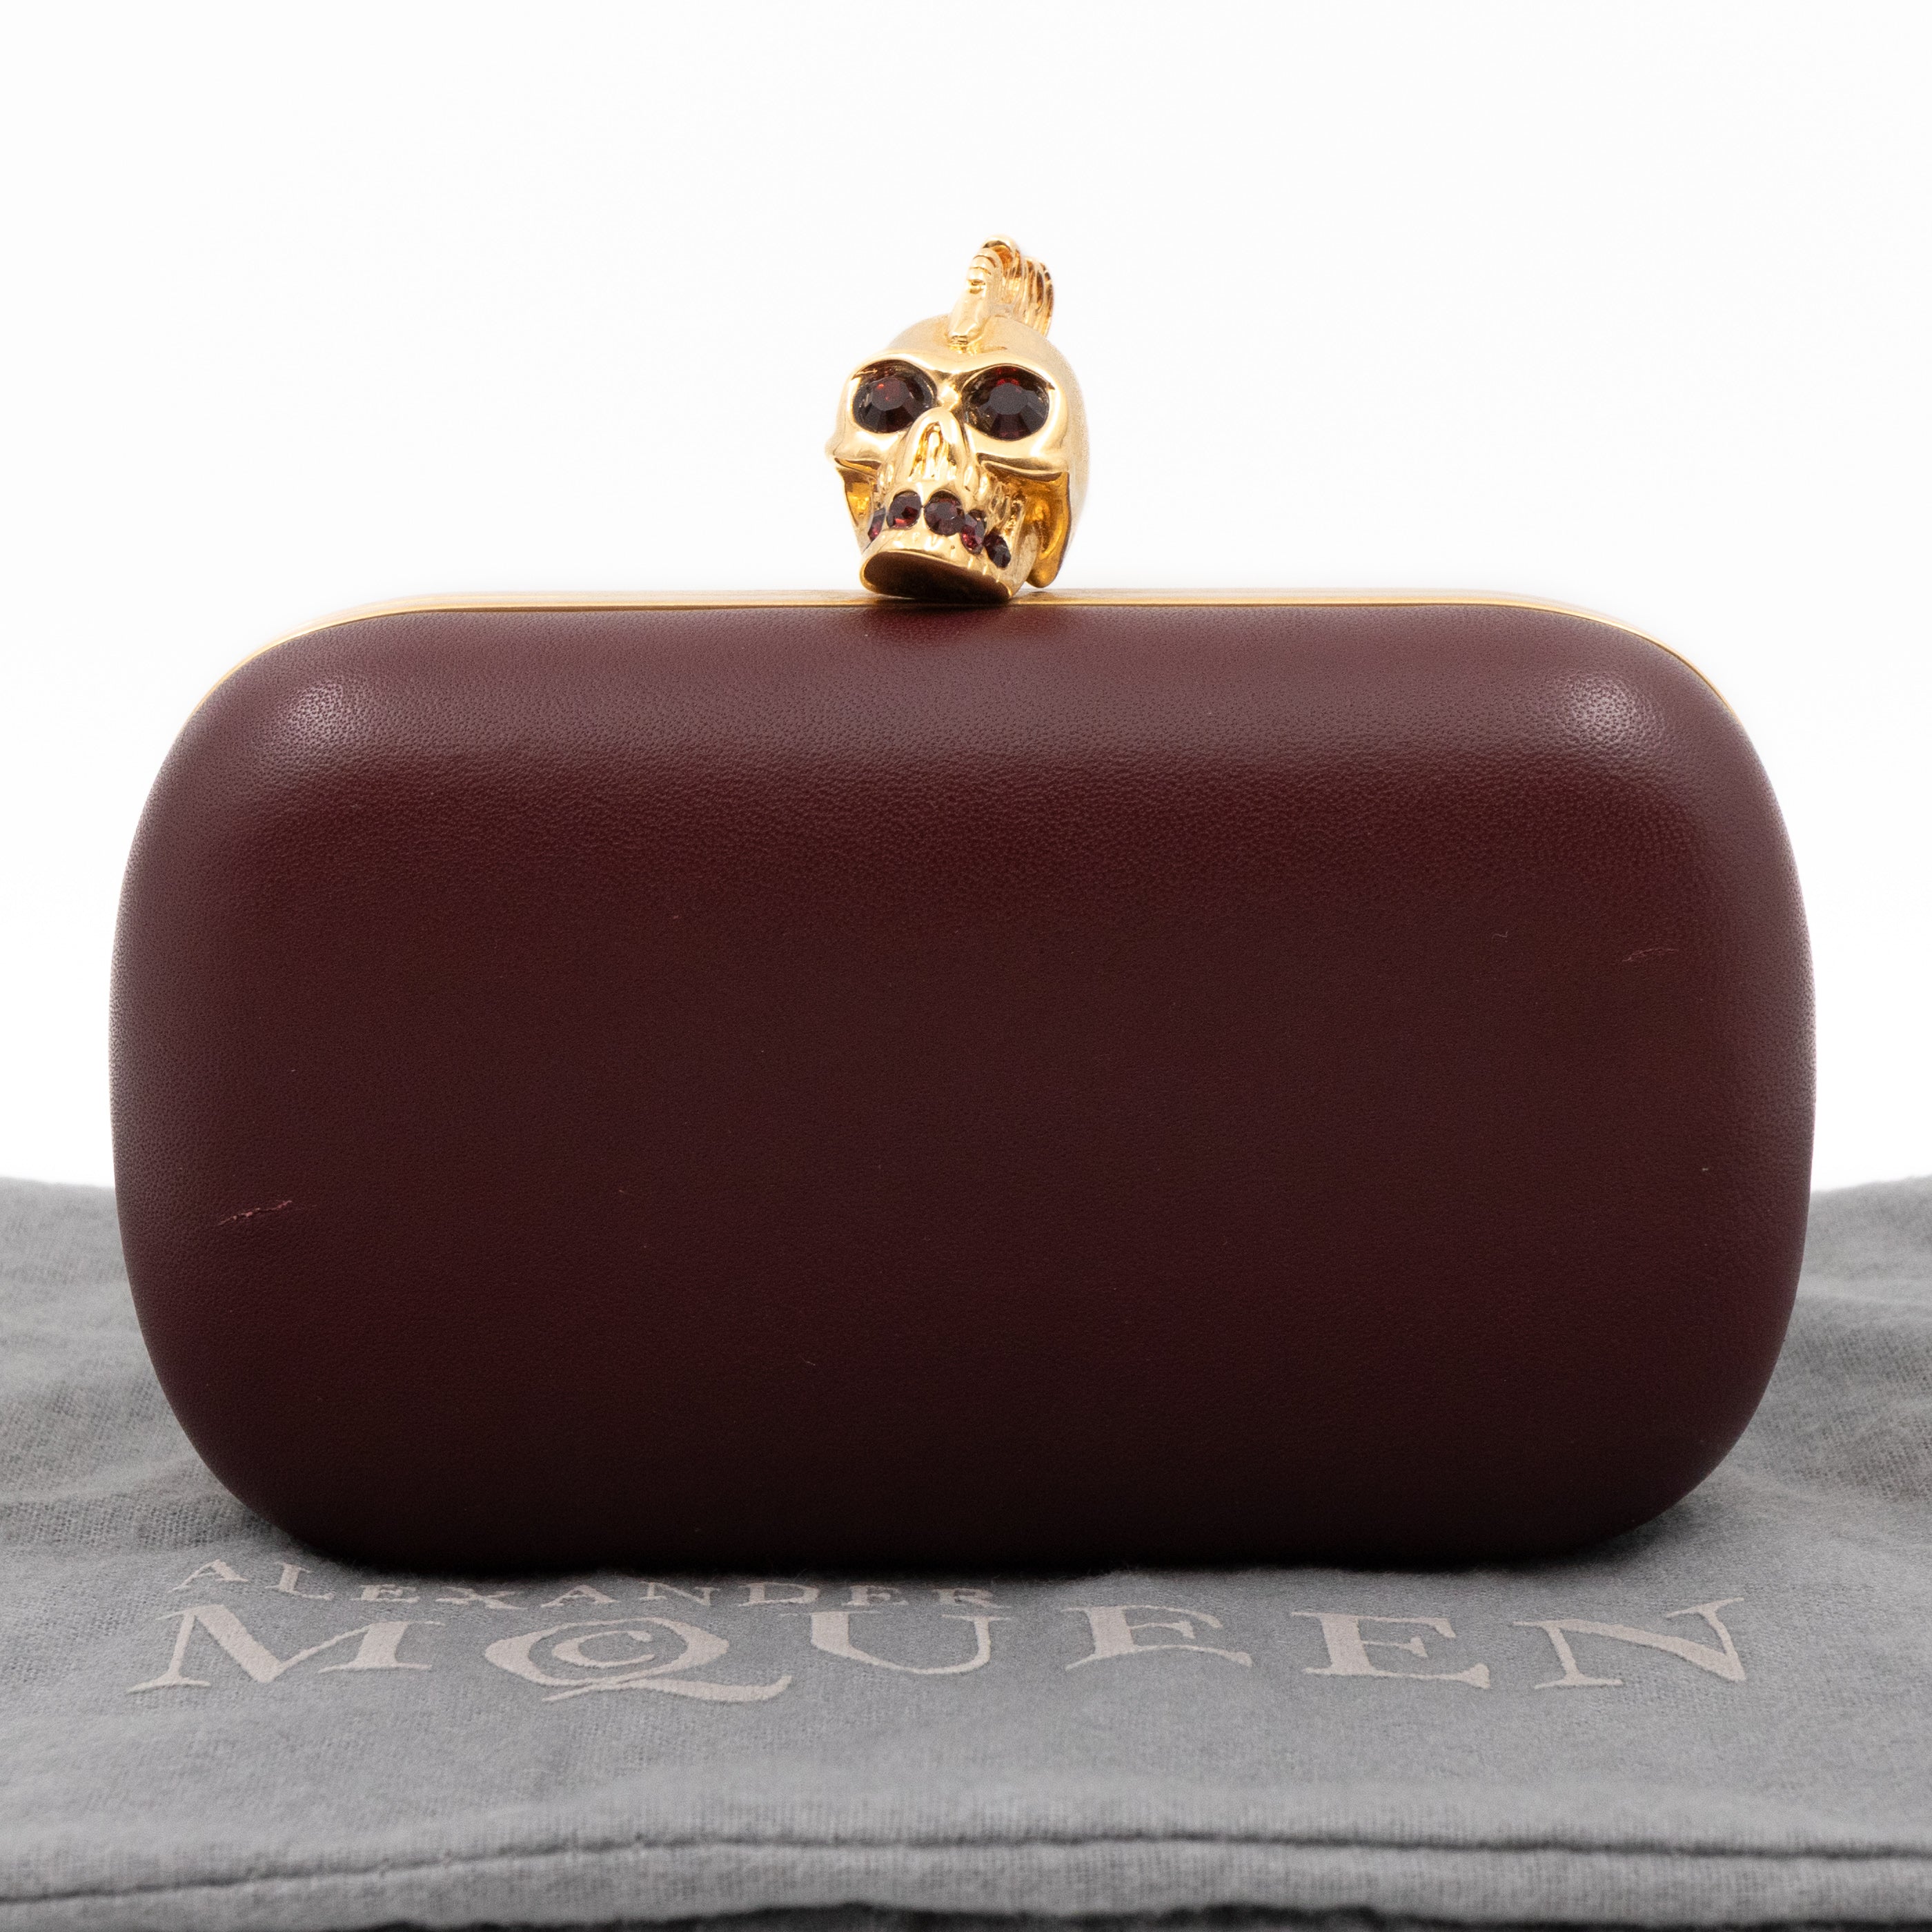 Alexander McQueen Skull Padlock Zip Around Small Tote in Grey Pebbled  Calfskin - SOLD